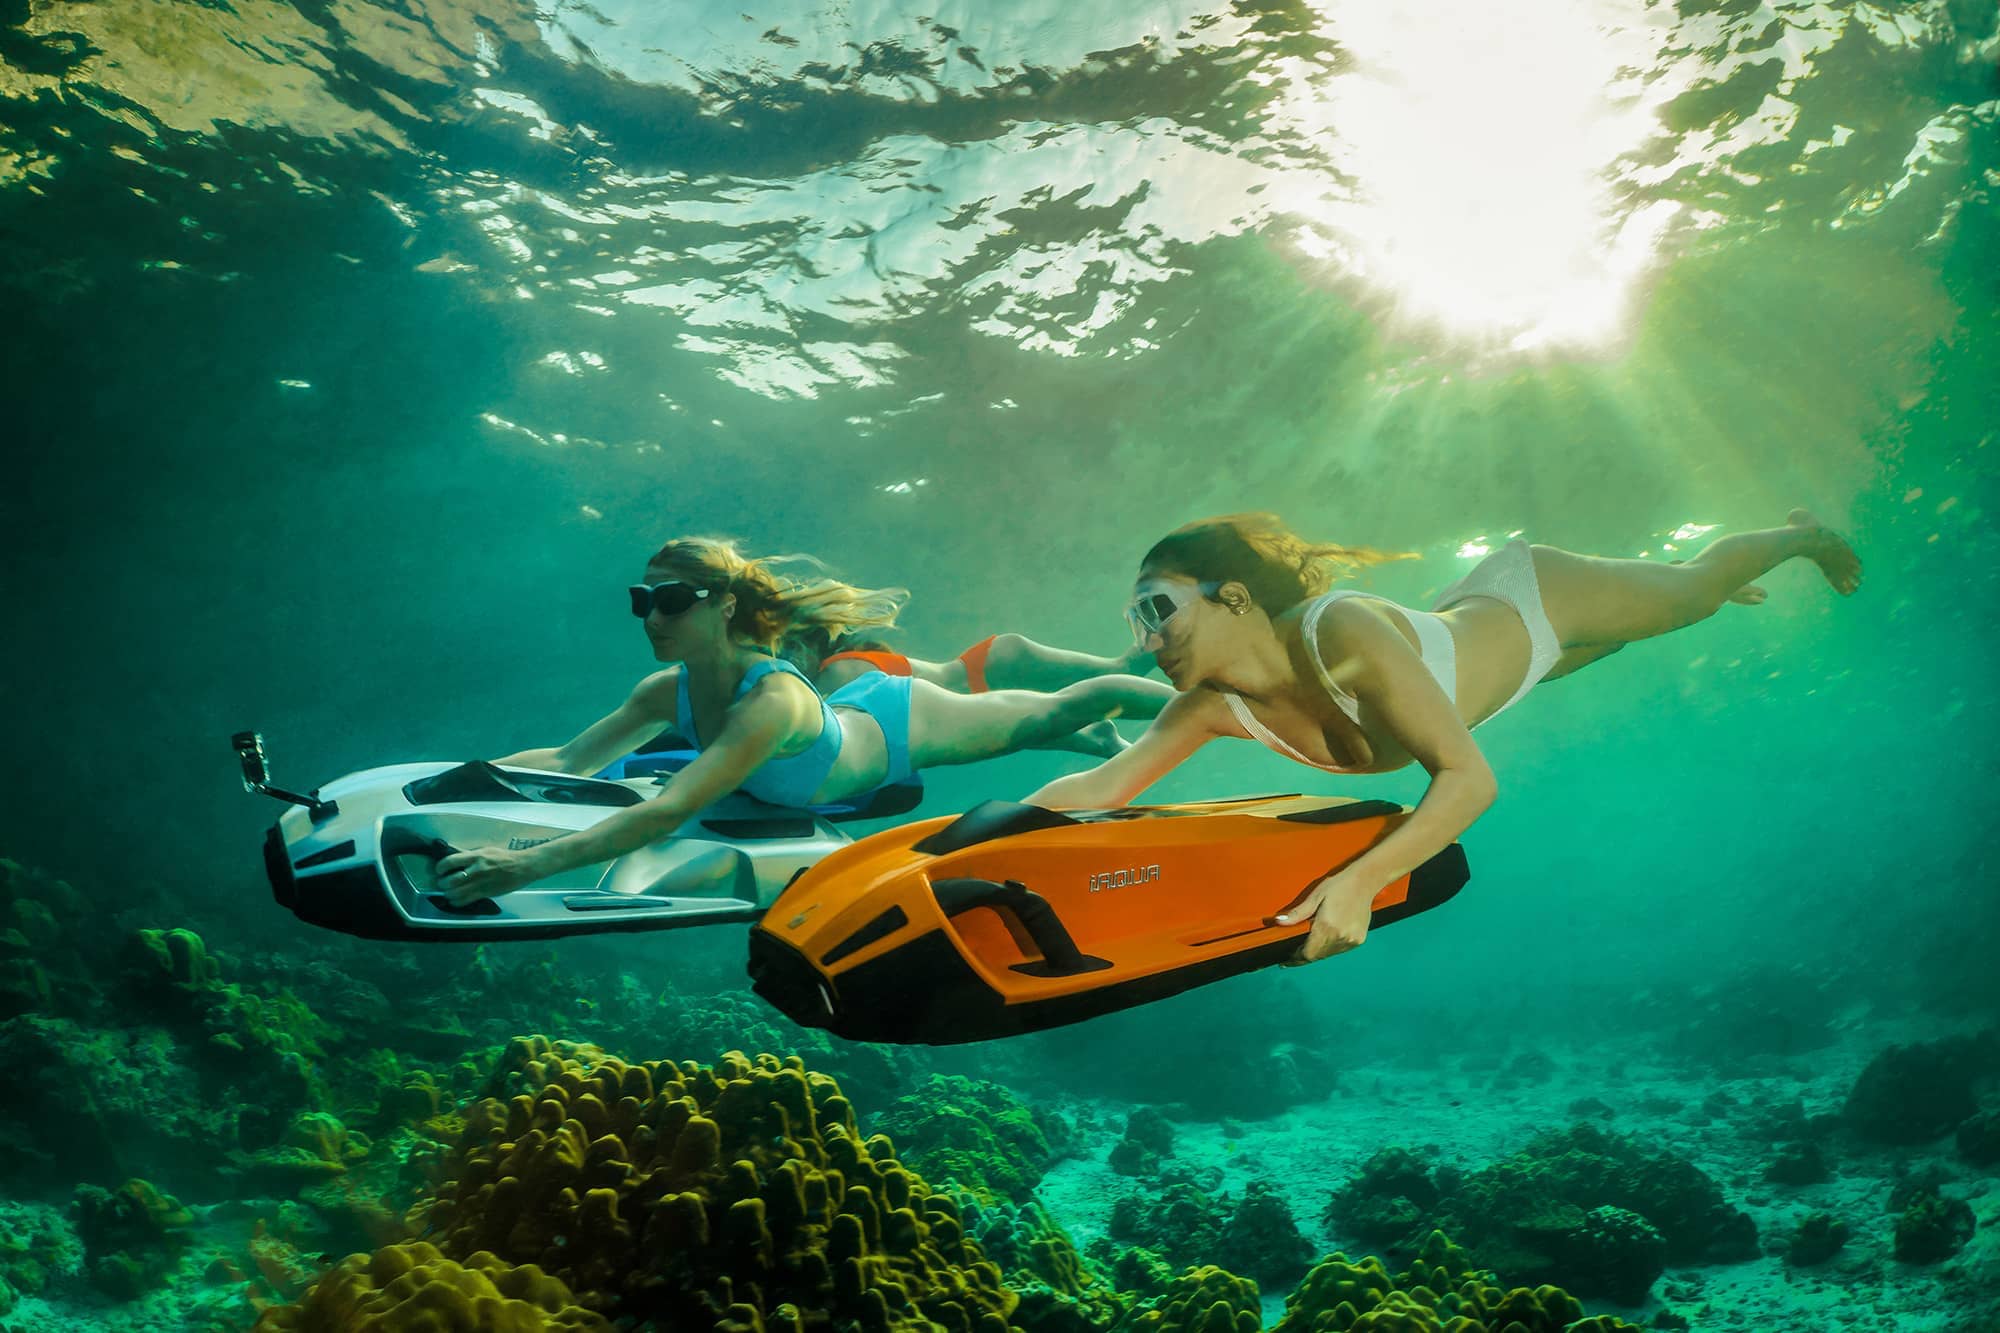 2 mulheres nadando com a scooter iAqua explorando o oceano.